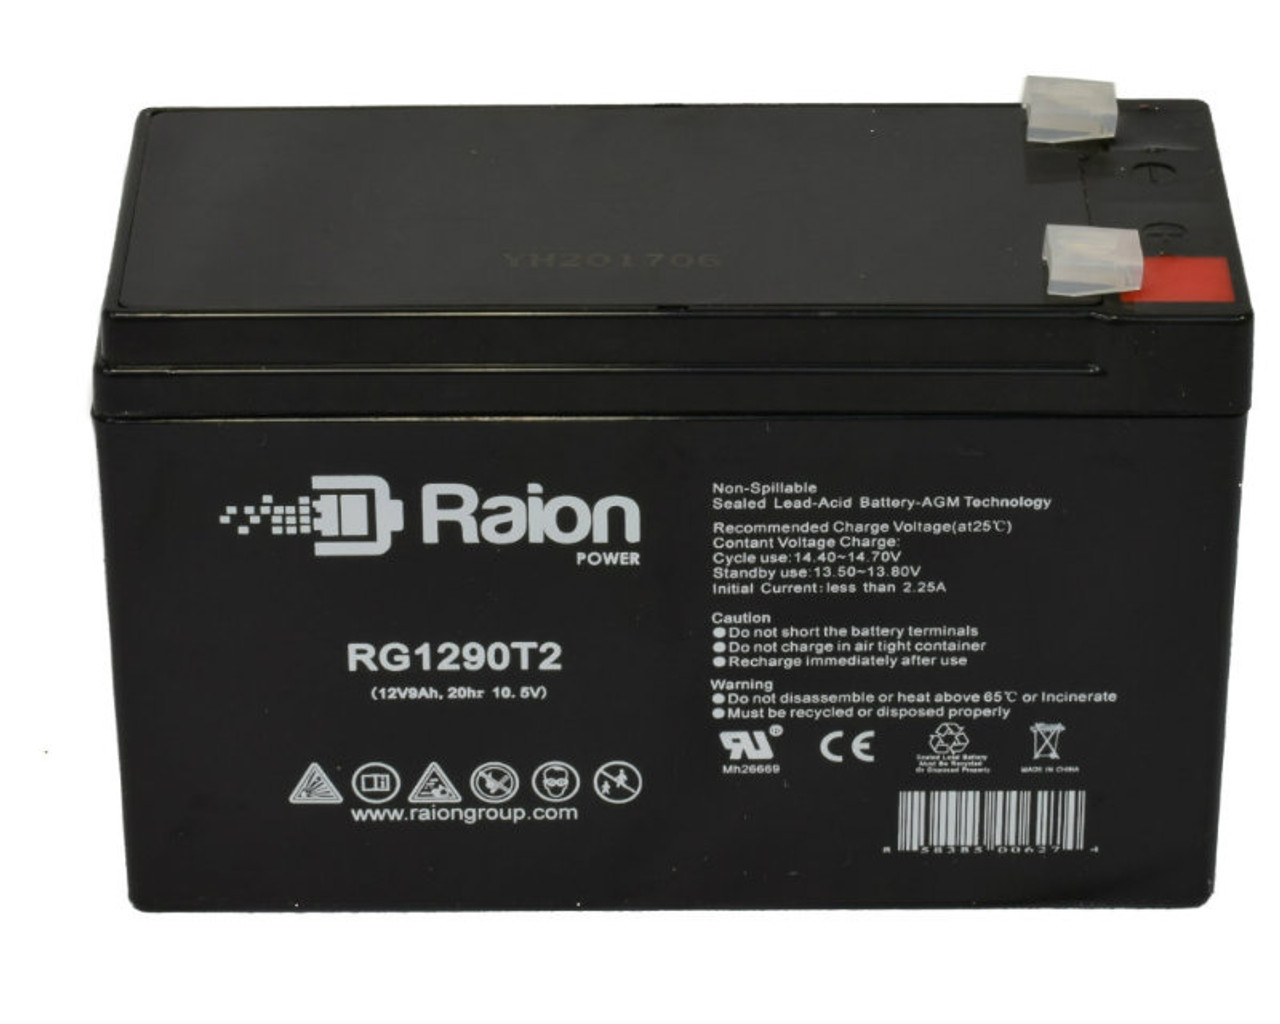 Raion Power RG1290T2 12V 9Ah Lead Acid Battery for NPP Power NP12-9Ah